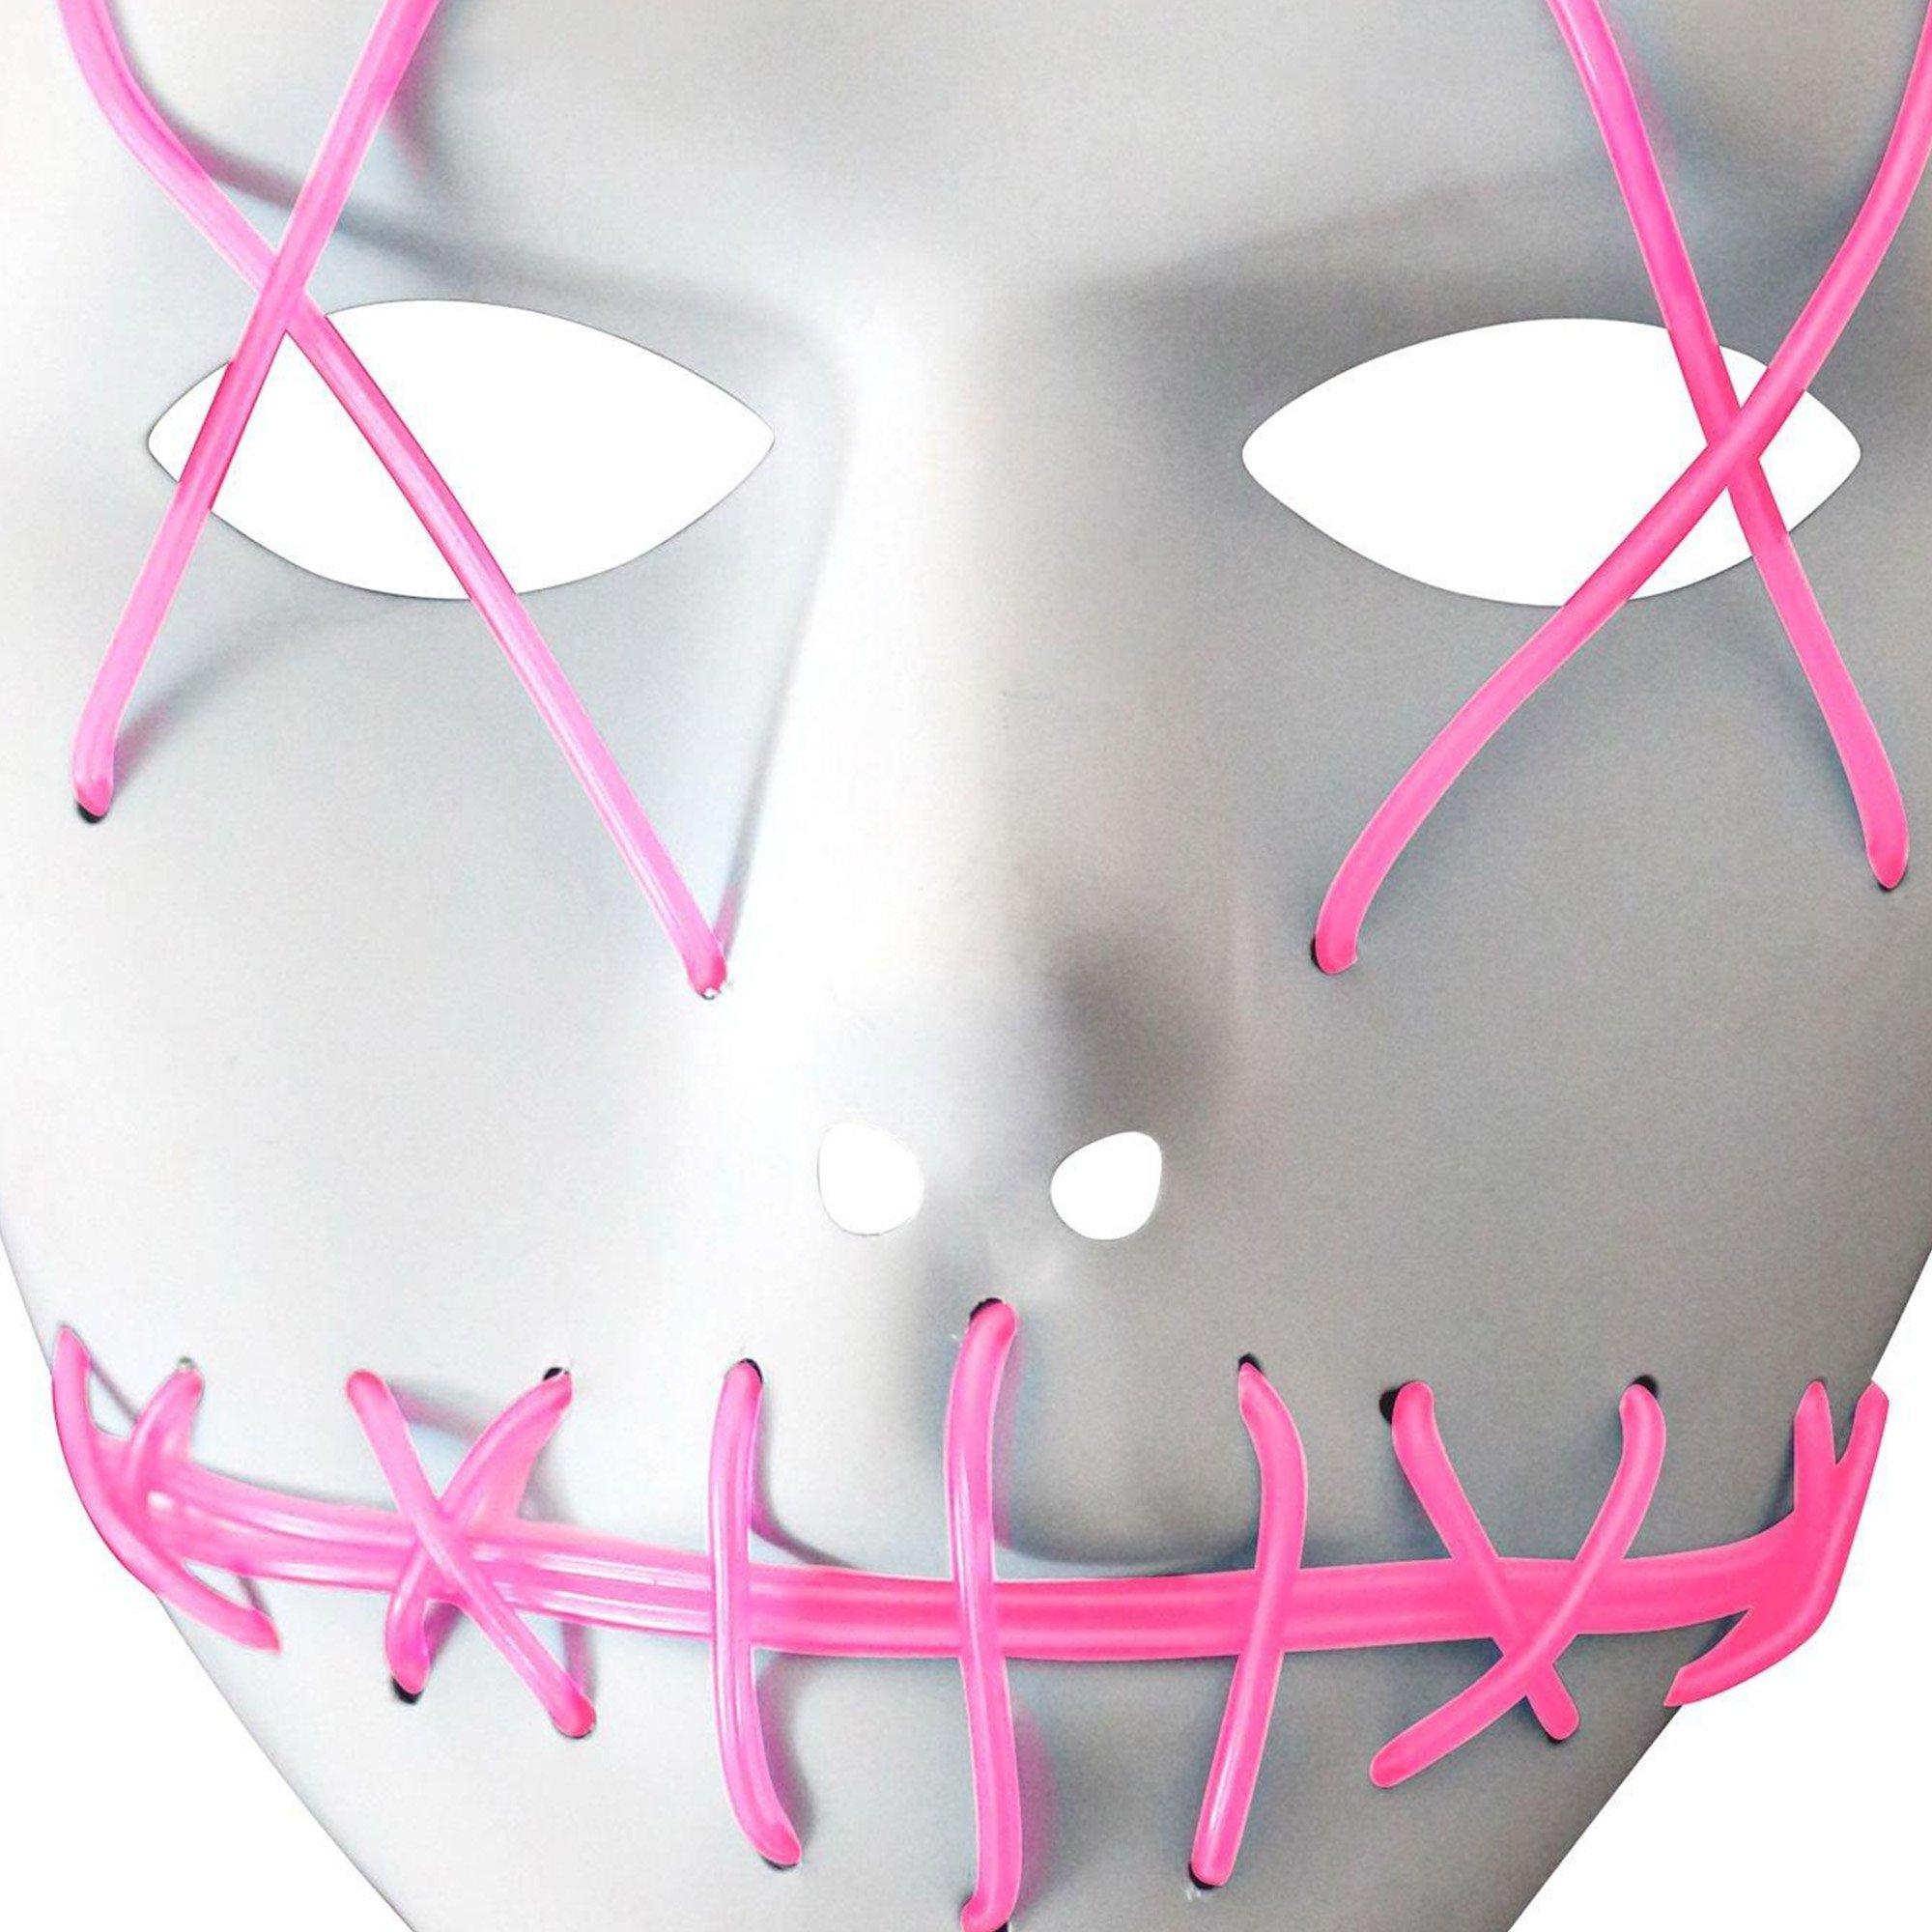 Light-Up Pink Stitch Face Mask